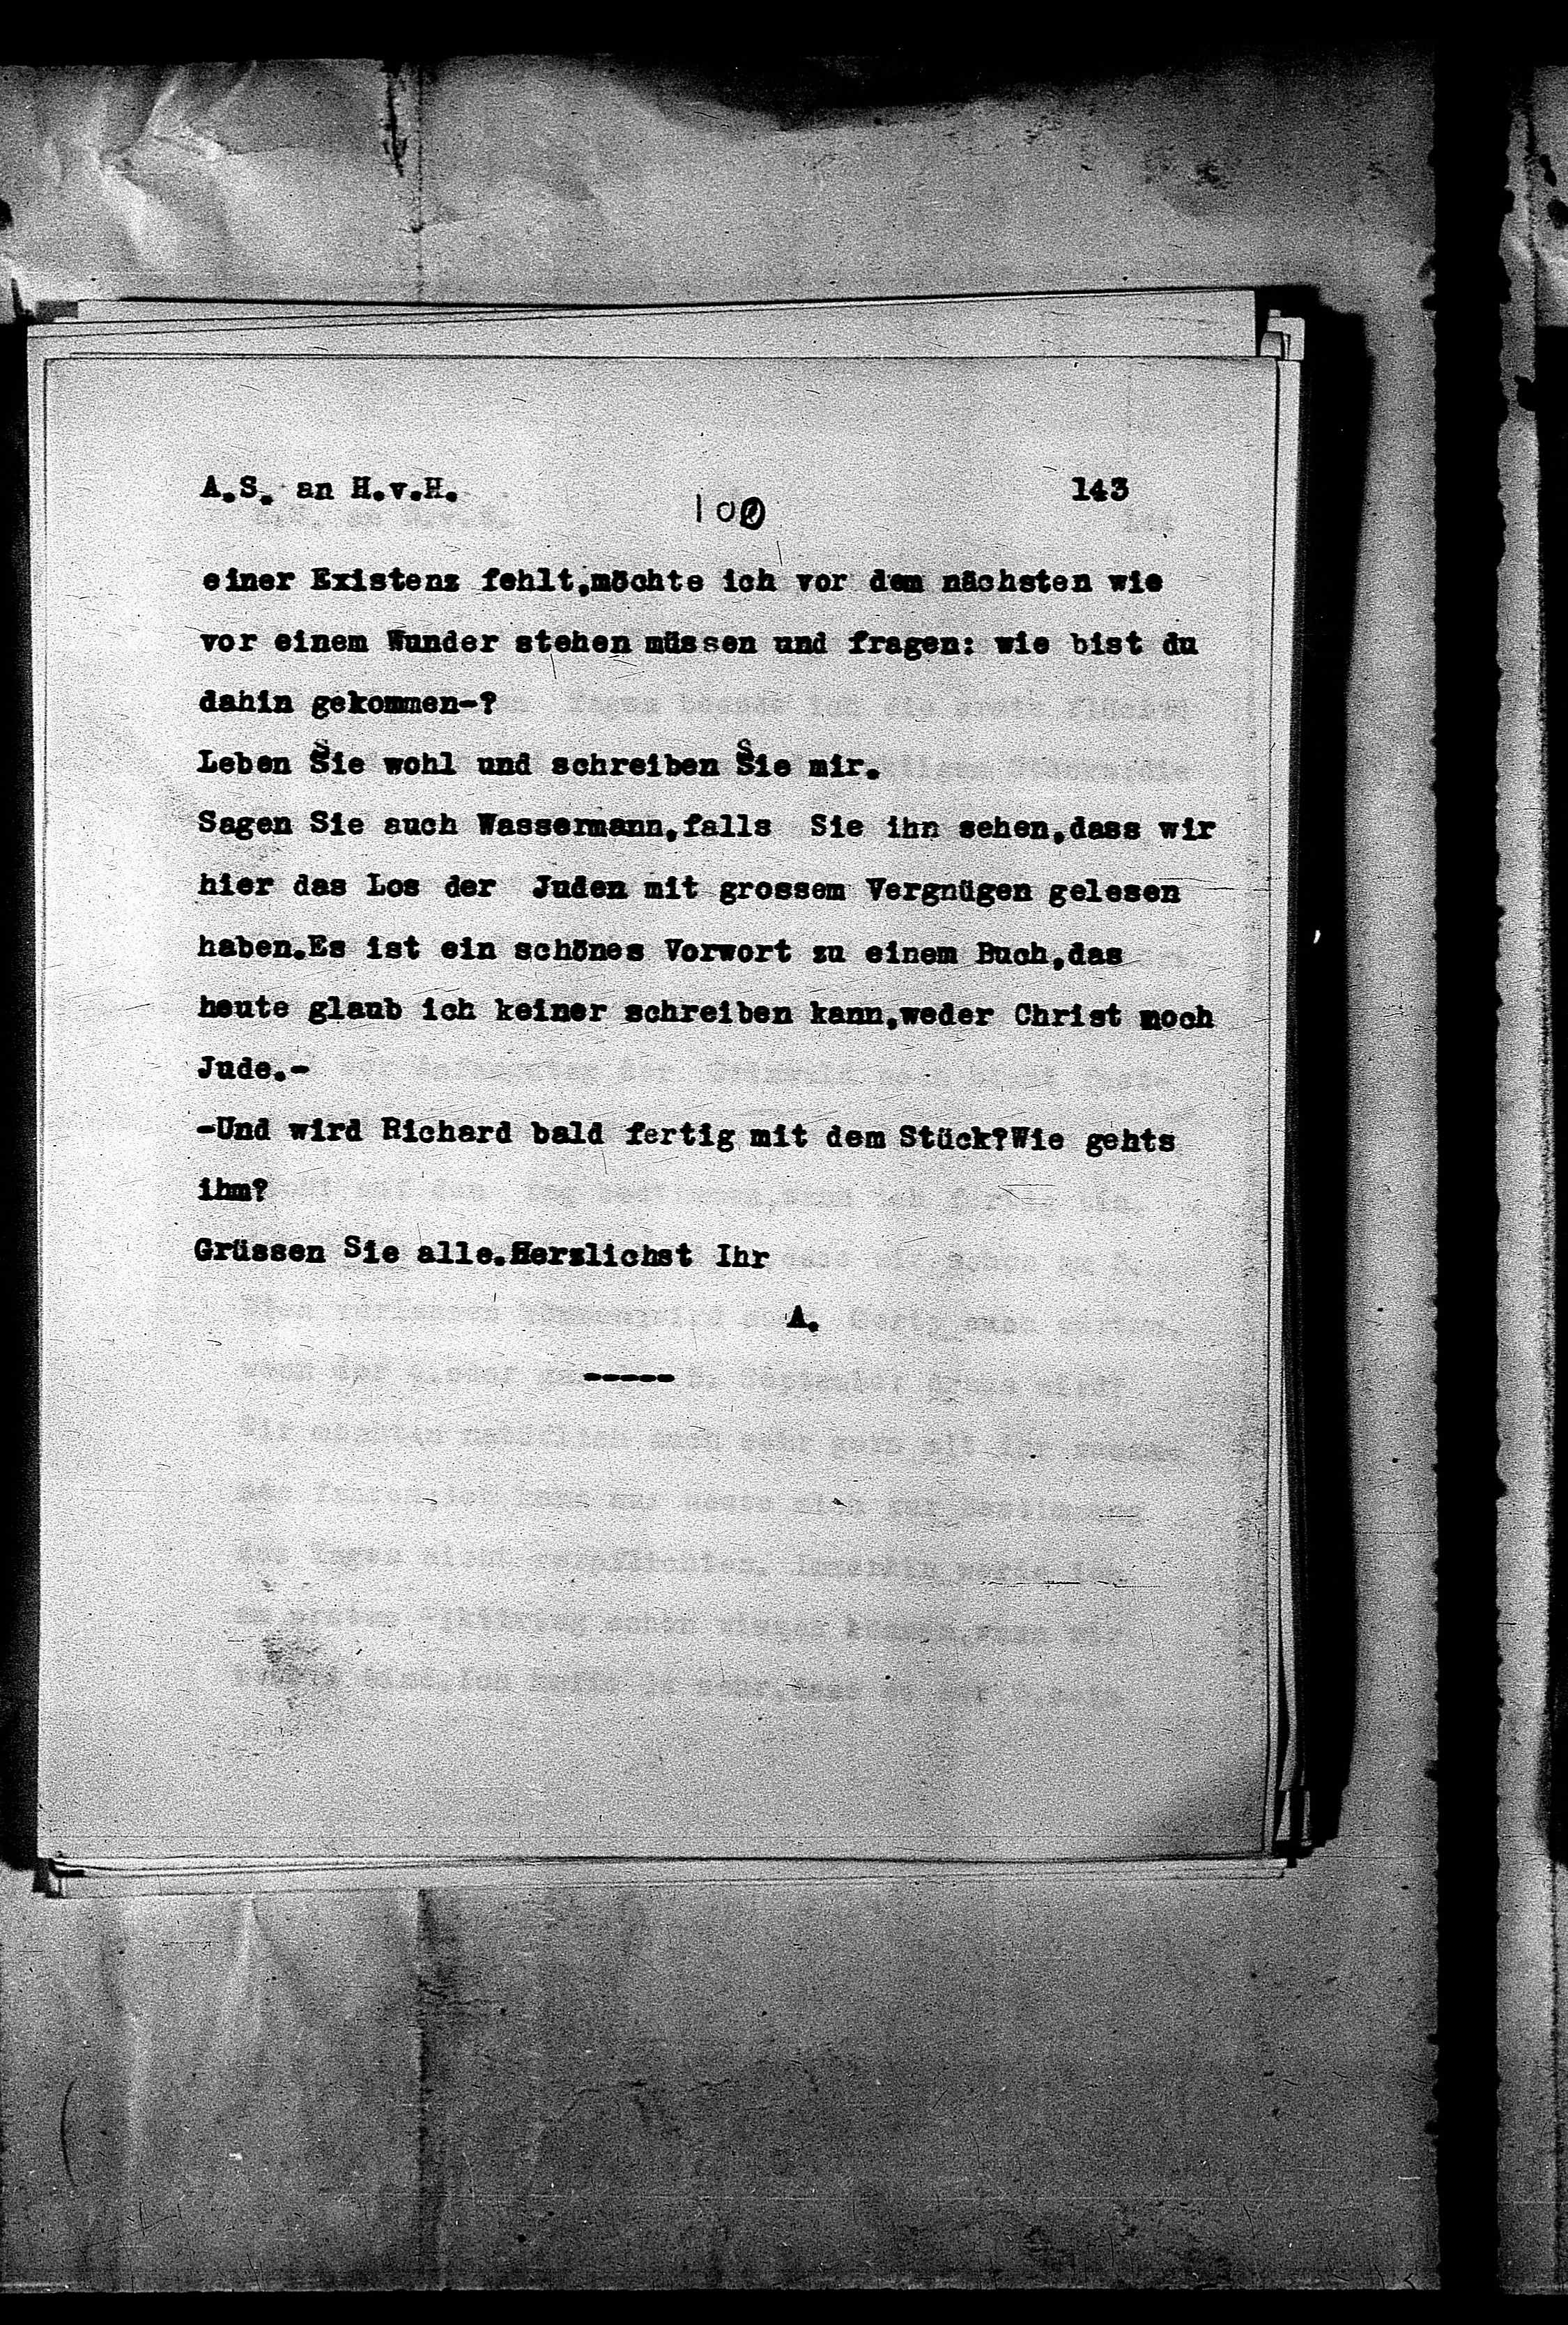 Vorschaubild für Hofmannsthal, Hugo von_AS an HvH Abschrift, HvH an AS, Originale (Mikrofilm 38), Seite 149